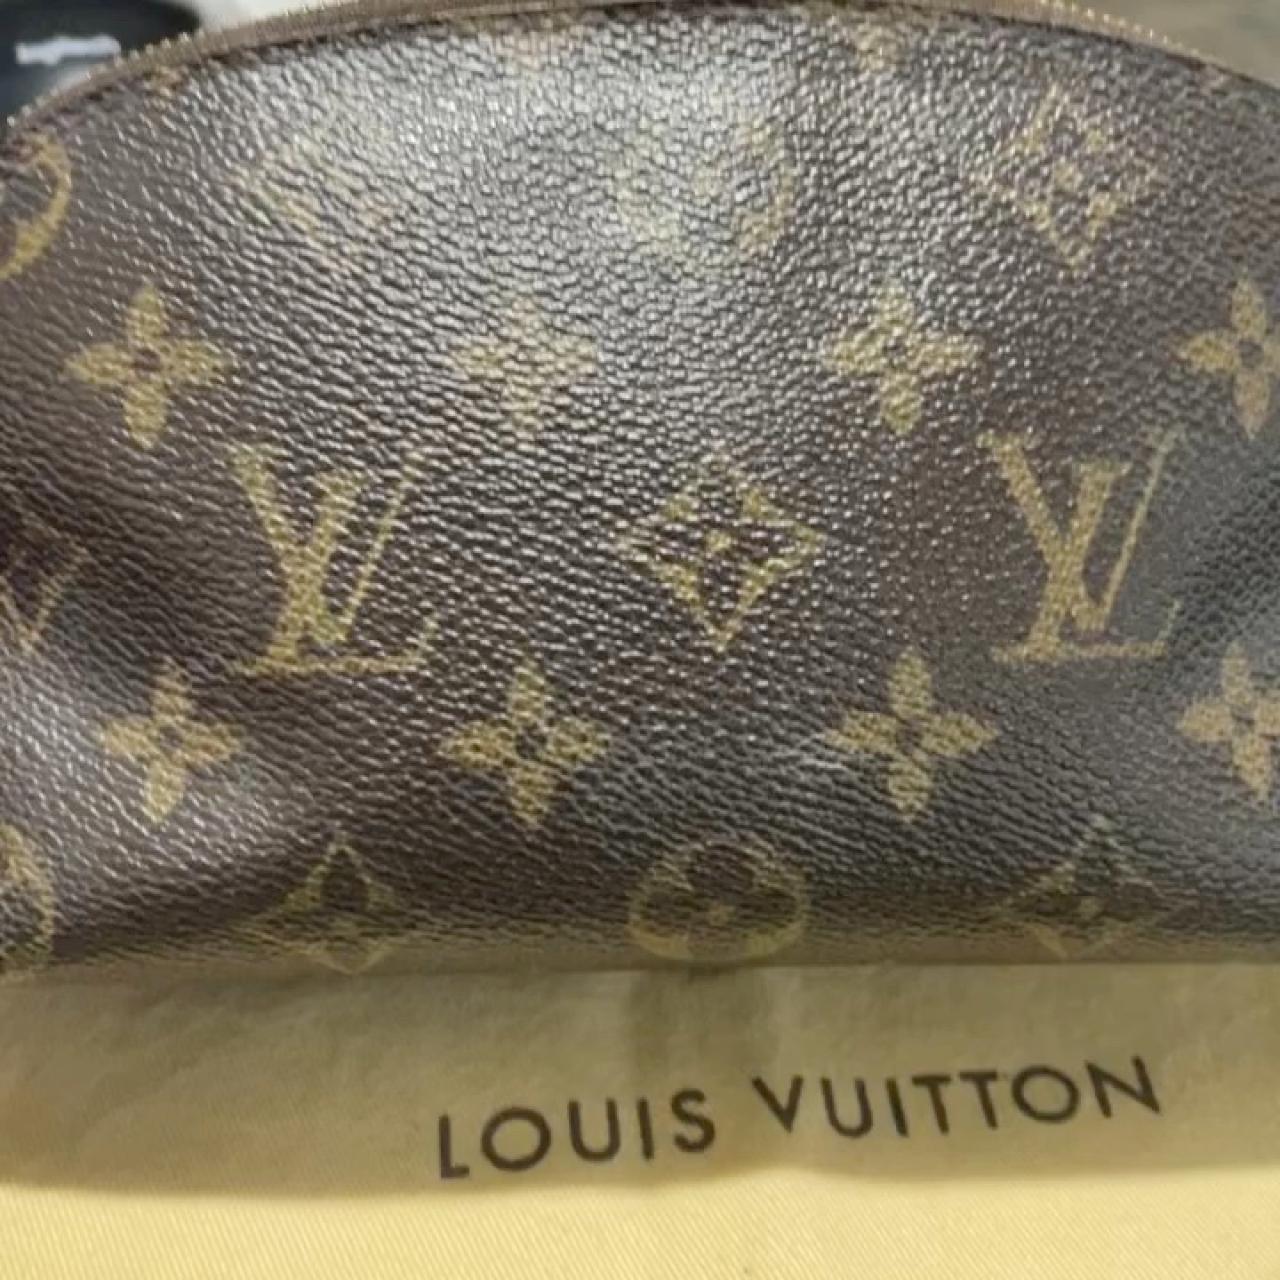 F a k e Louis Vuitton Monogram colored bag - Depop